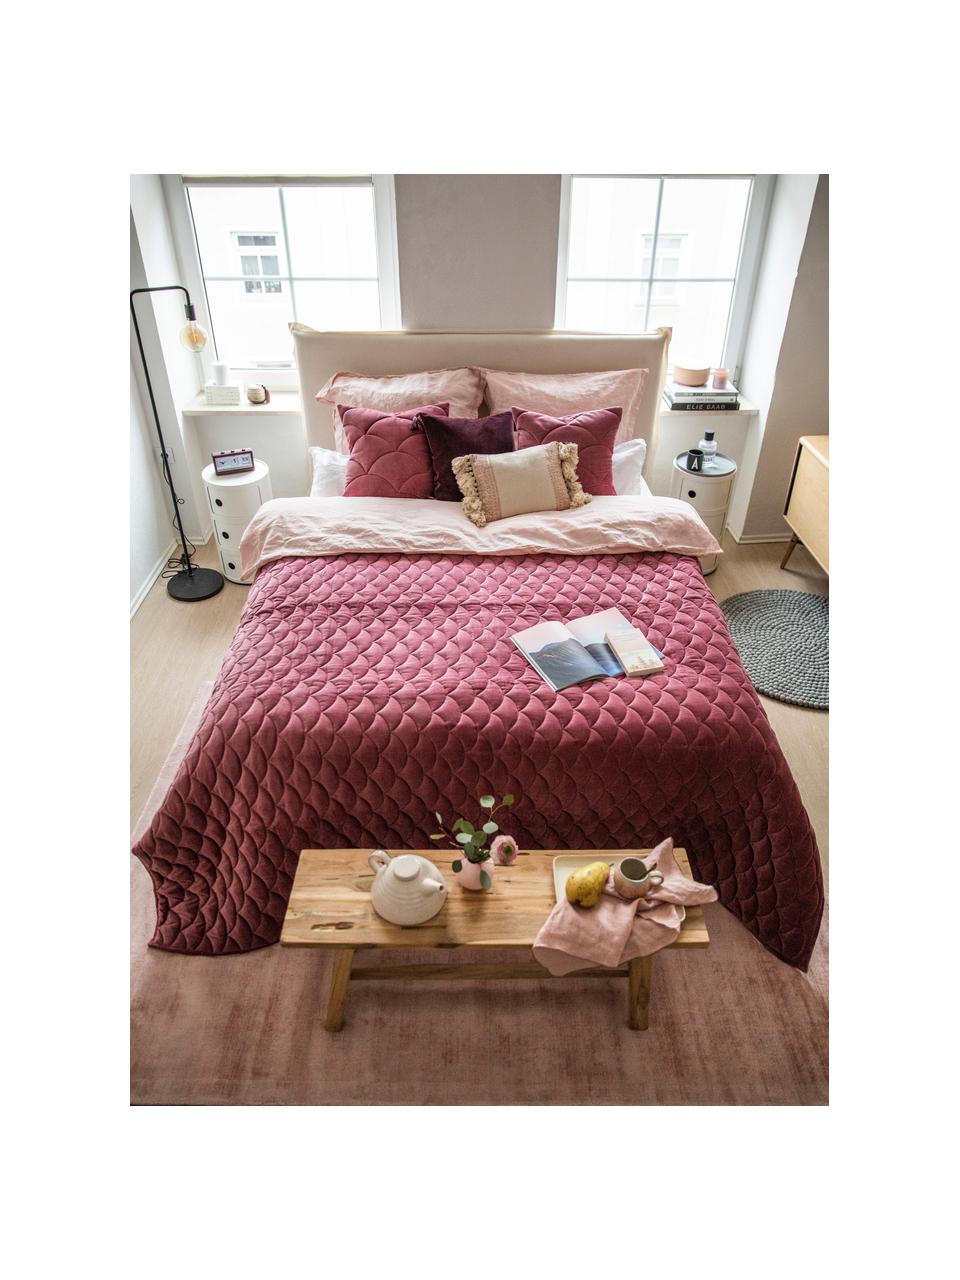 Premium kontinentální postel Violet, Krémově bílá, Š 140 cm, D 200 cm, stupeň tvrdosti 2